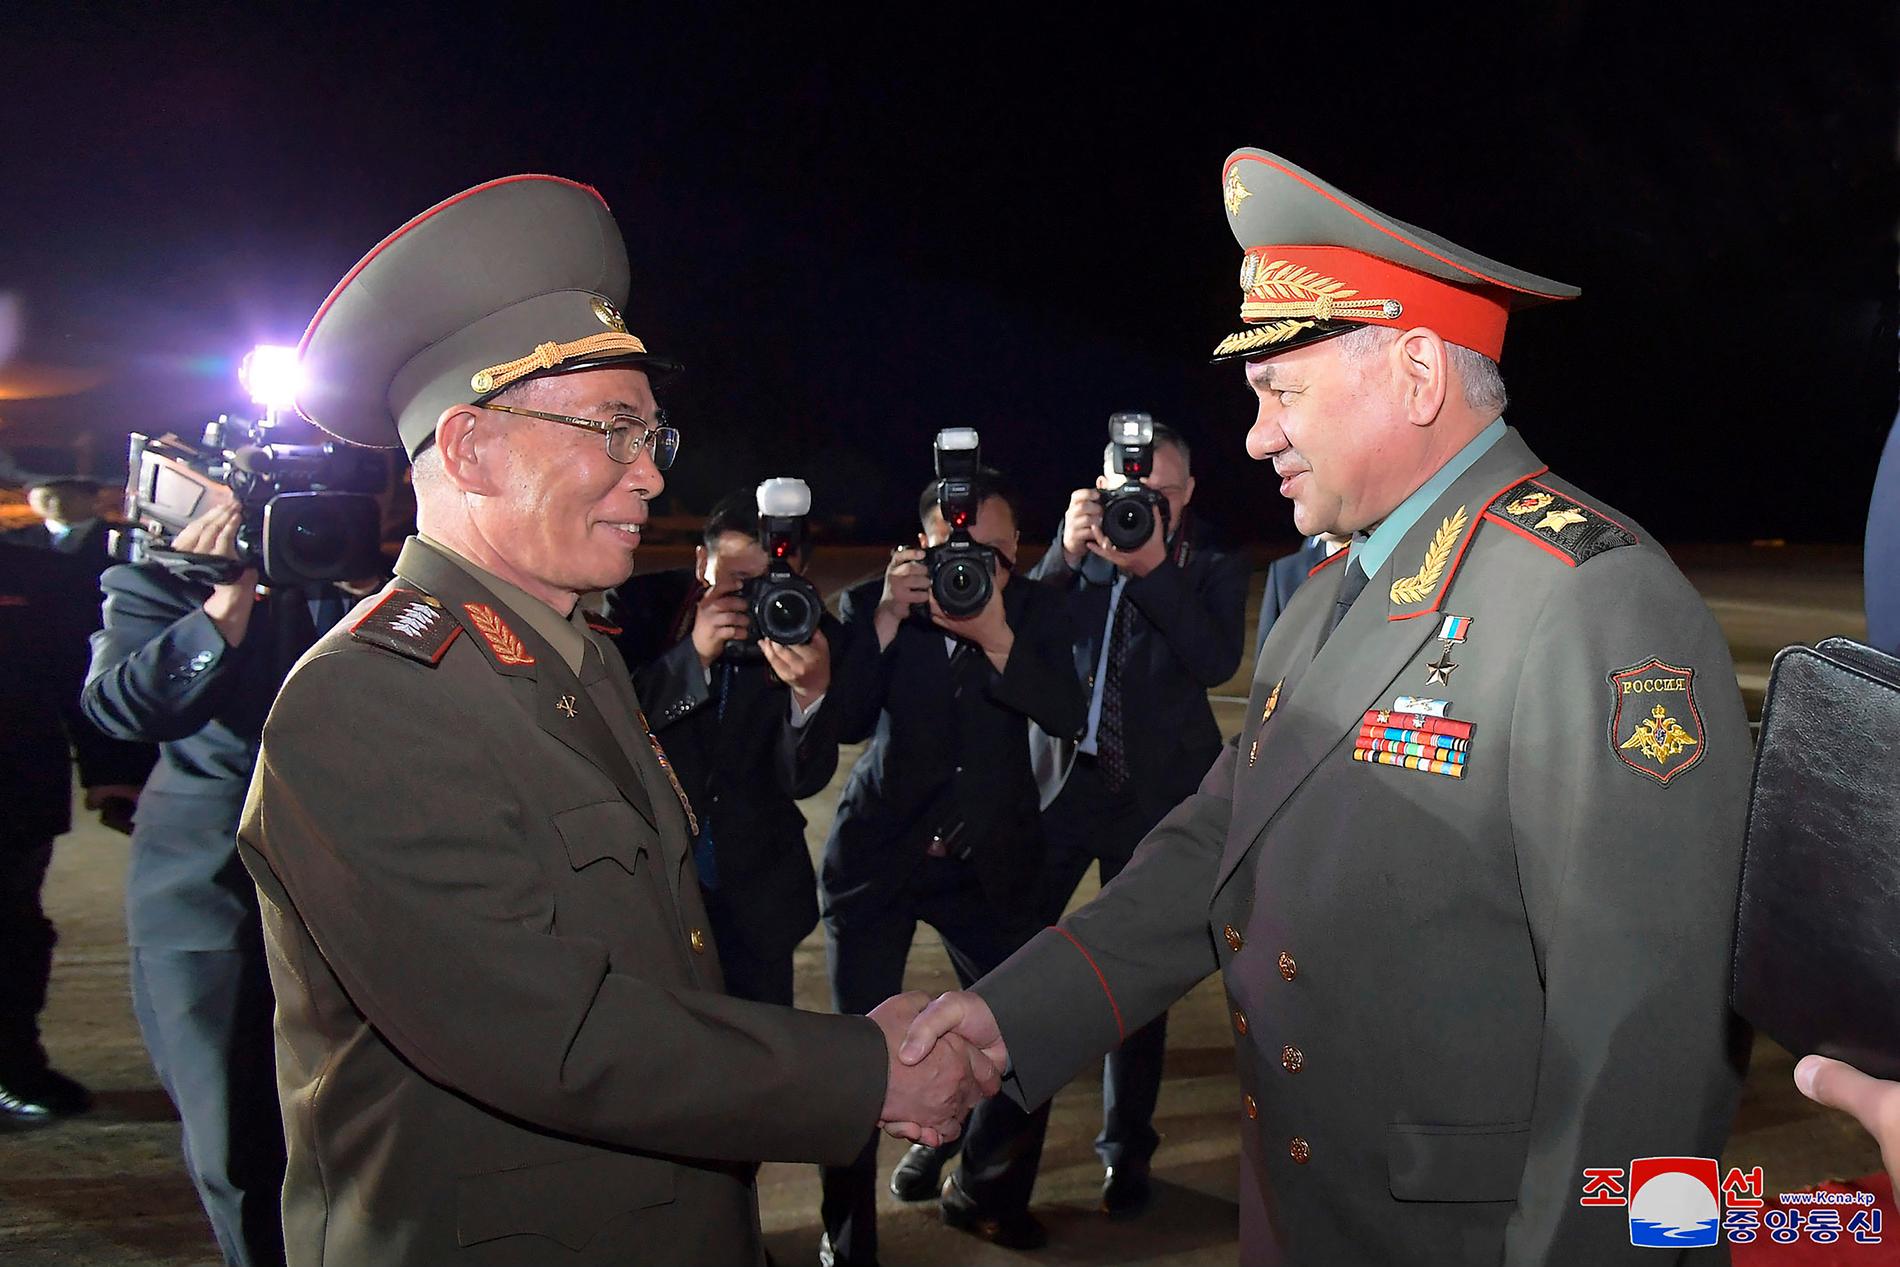 Nordkoreas försvarsminister Kang Sun Nam (till vänster) hälsar på ryske kollegan Sergej Sjojgu i somras. Båda finns nu med på EU:s sanktionslista över Rysslands krig i Ukraina. Arkivbild.